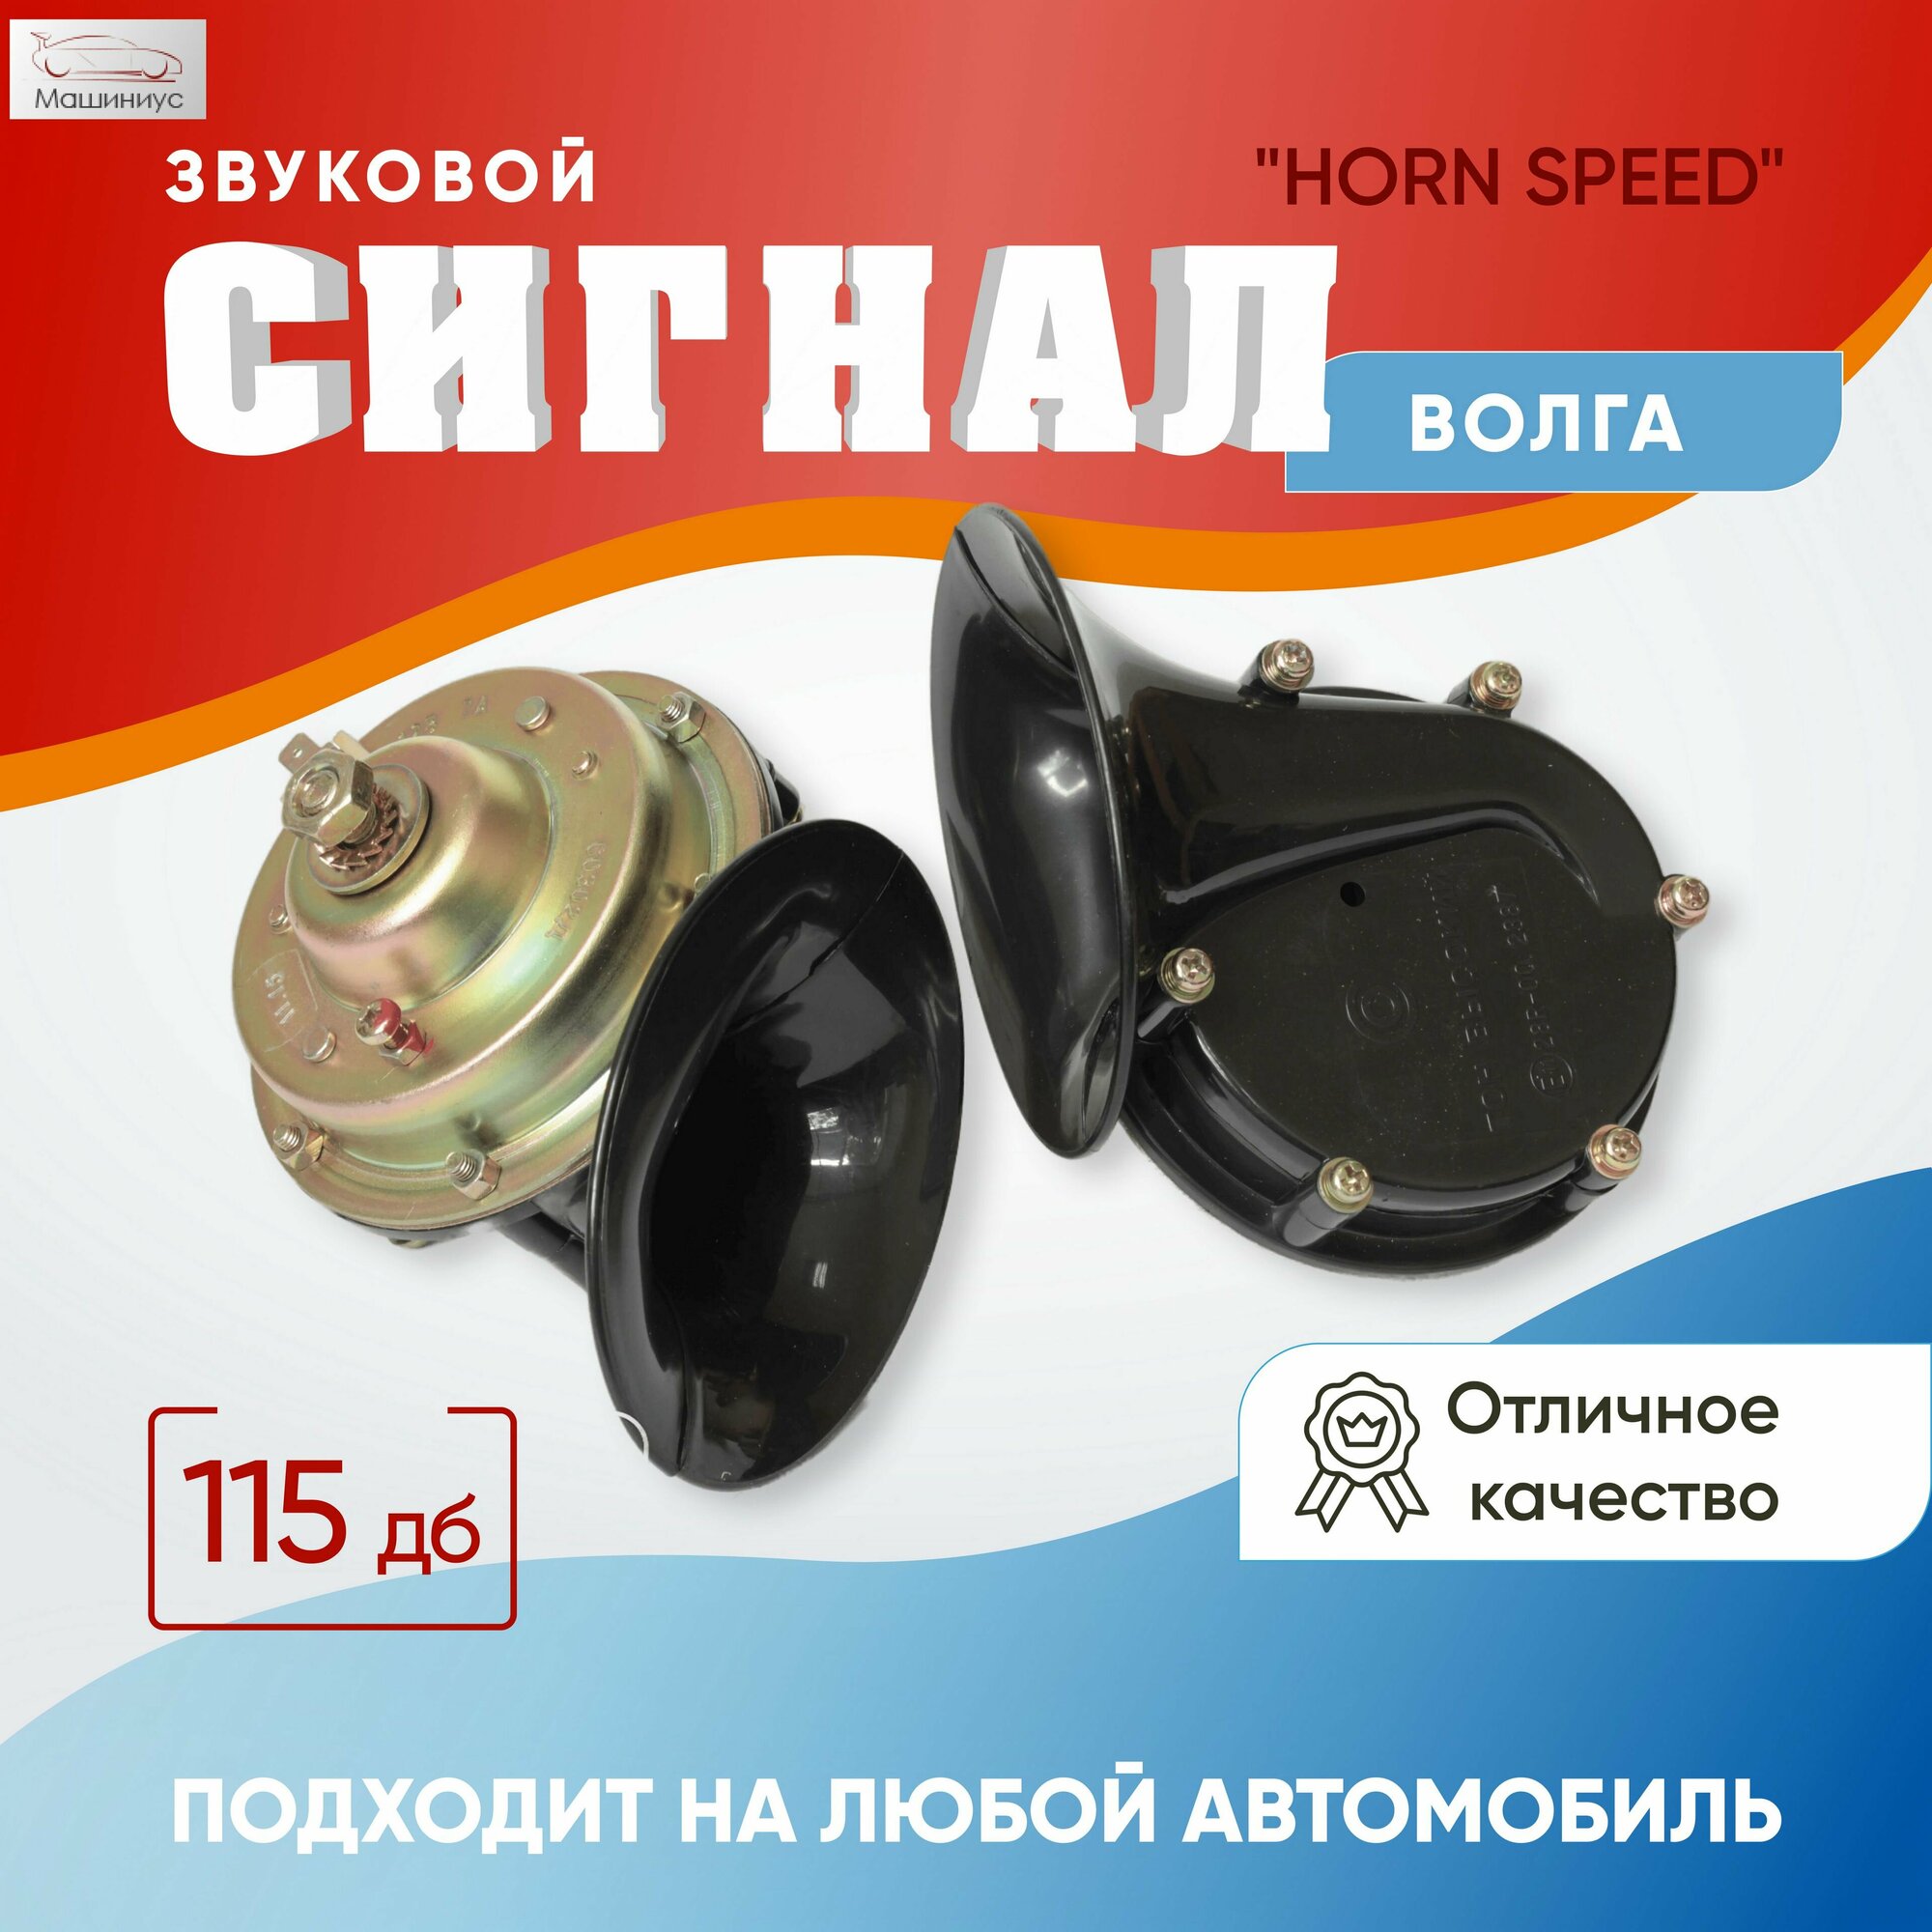 Автомобильный клаксон электрический / Звуковой сигнал Волга "HORN SPEED" для любых марок автомобилей